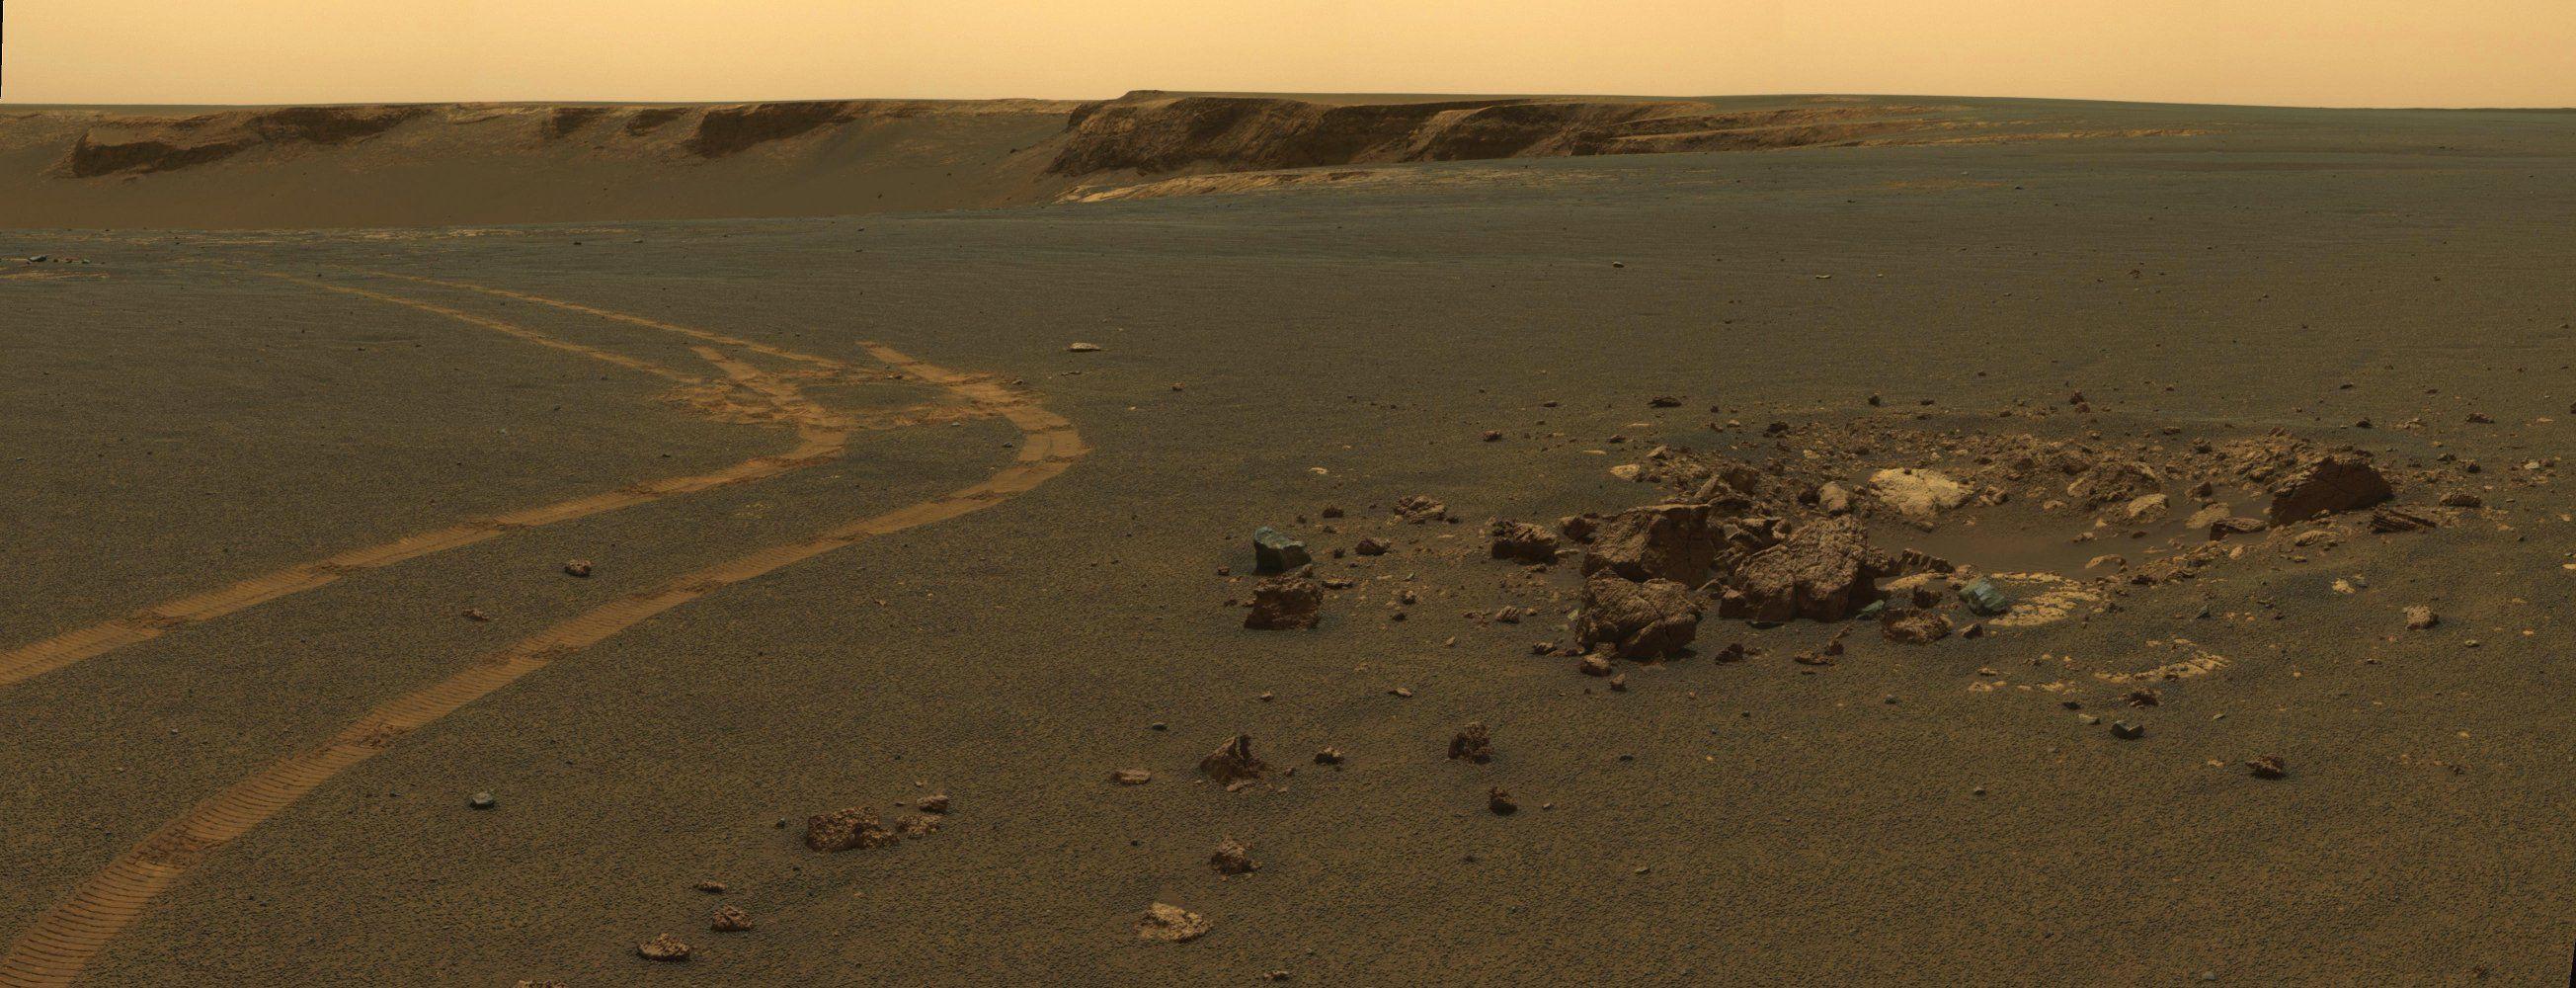 Mars Desktop Wallpaper, NASA Opportunity Rover Tracks on Martian